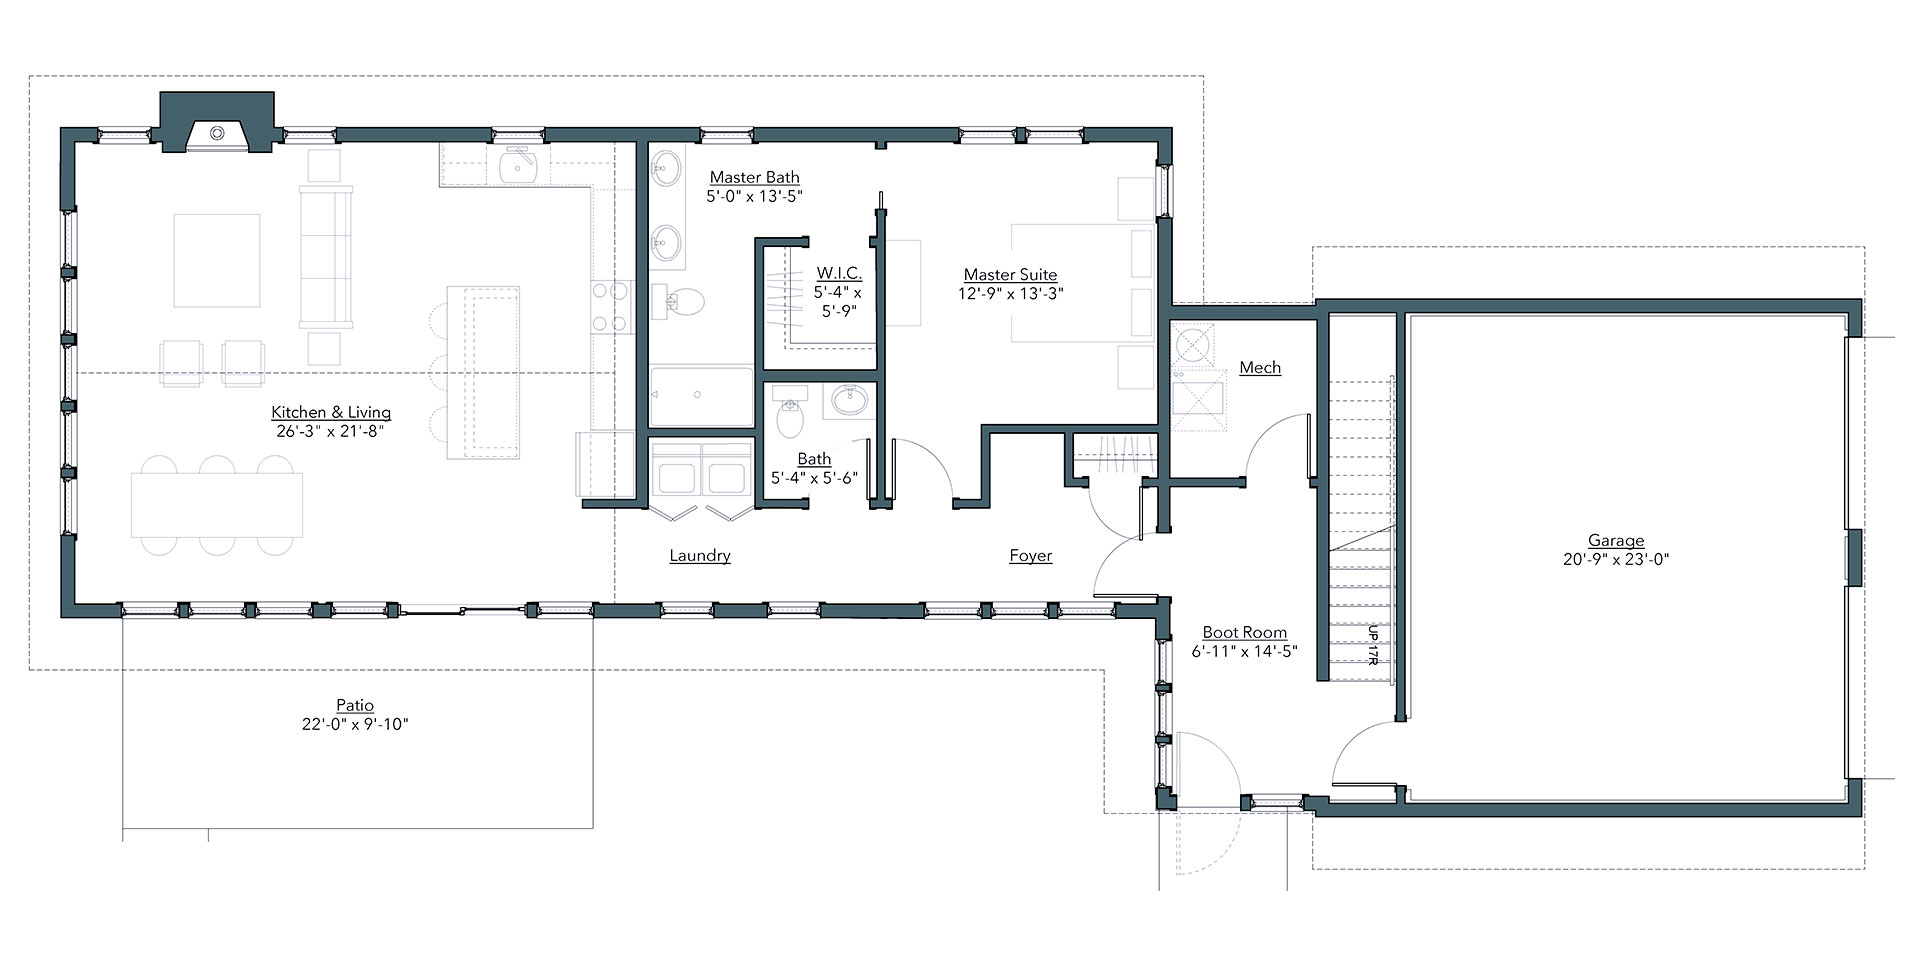 Mainsail Cottage Floorplan - First Floor